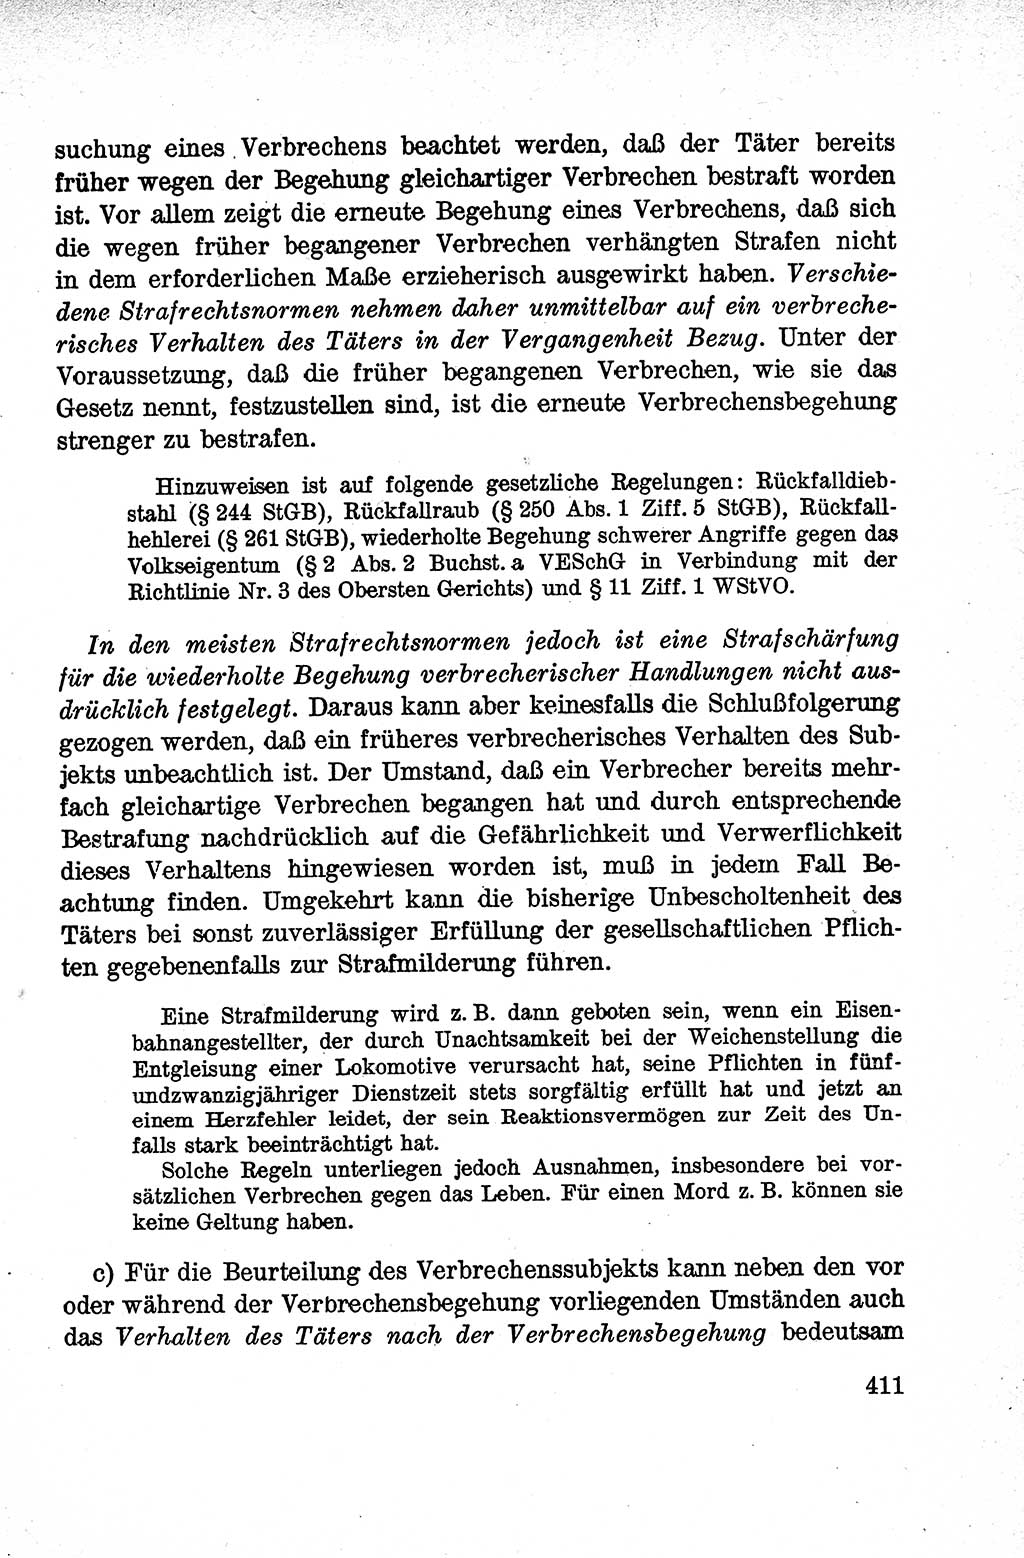 Lehrbuch des Strafrechts der Deutschen Demokratischen Republik (DDR), Allgemeiner Teil 1959, Seite 411 (Lb. Strafr. DDR AT 1959, S. 411)